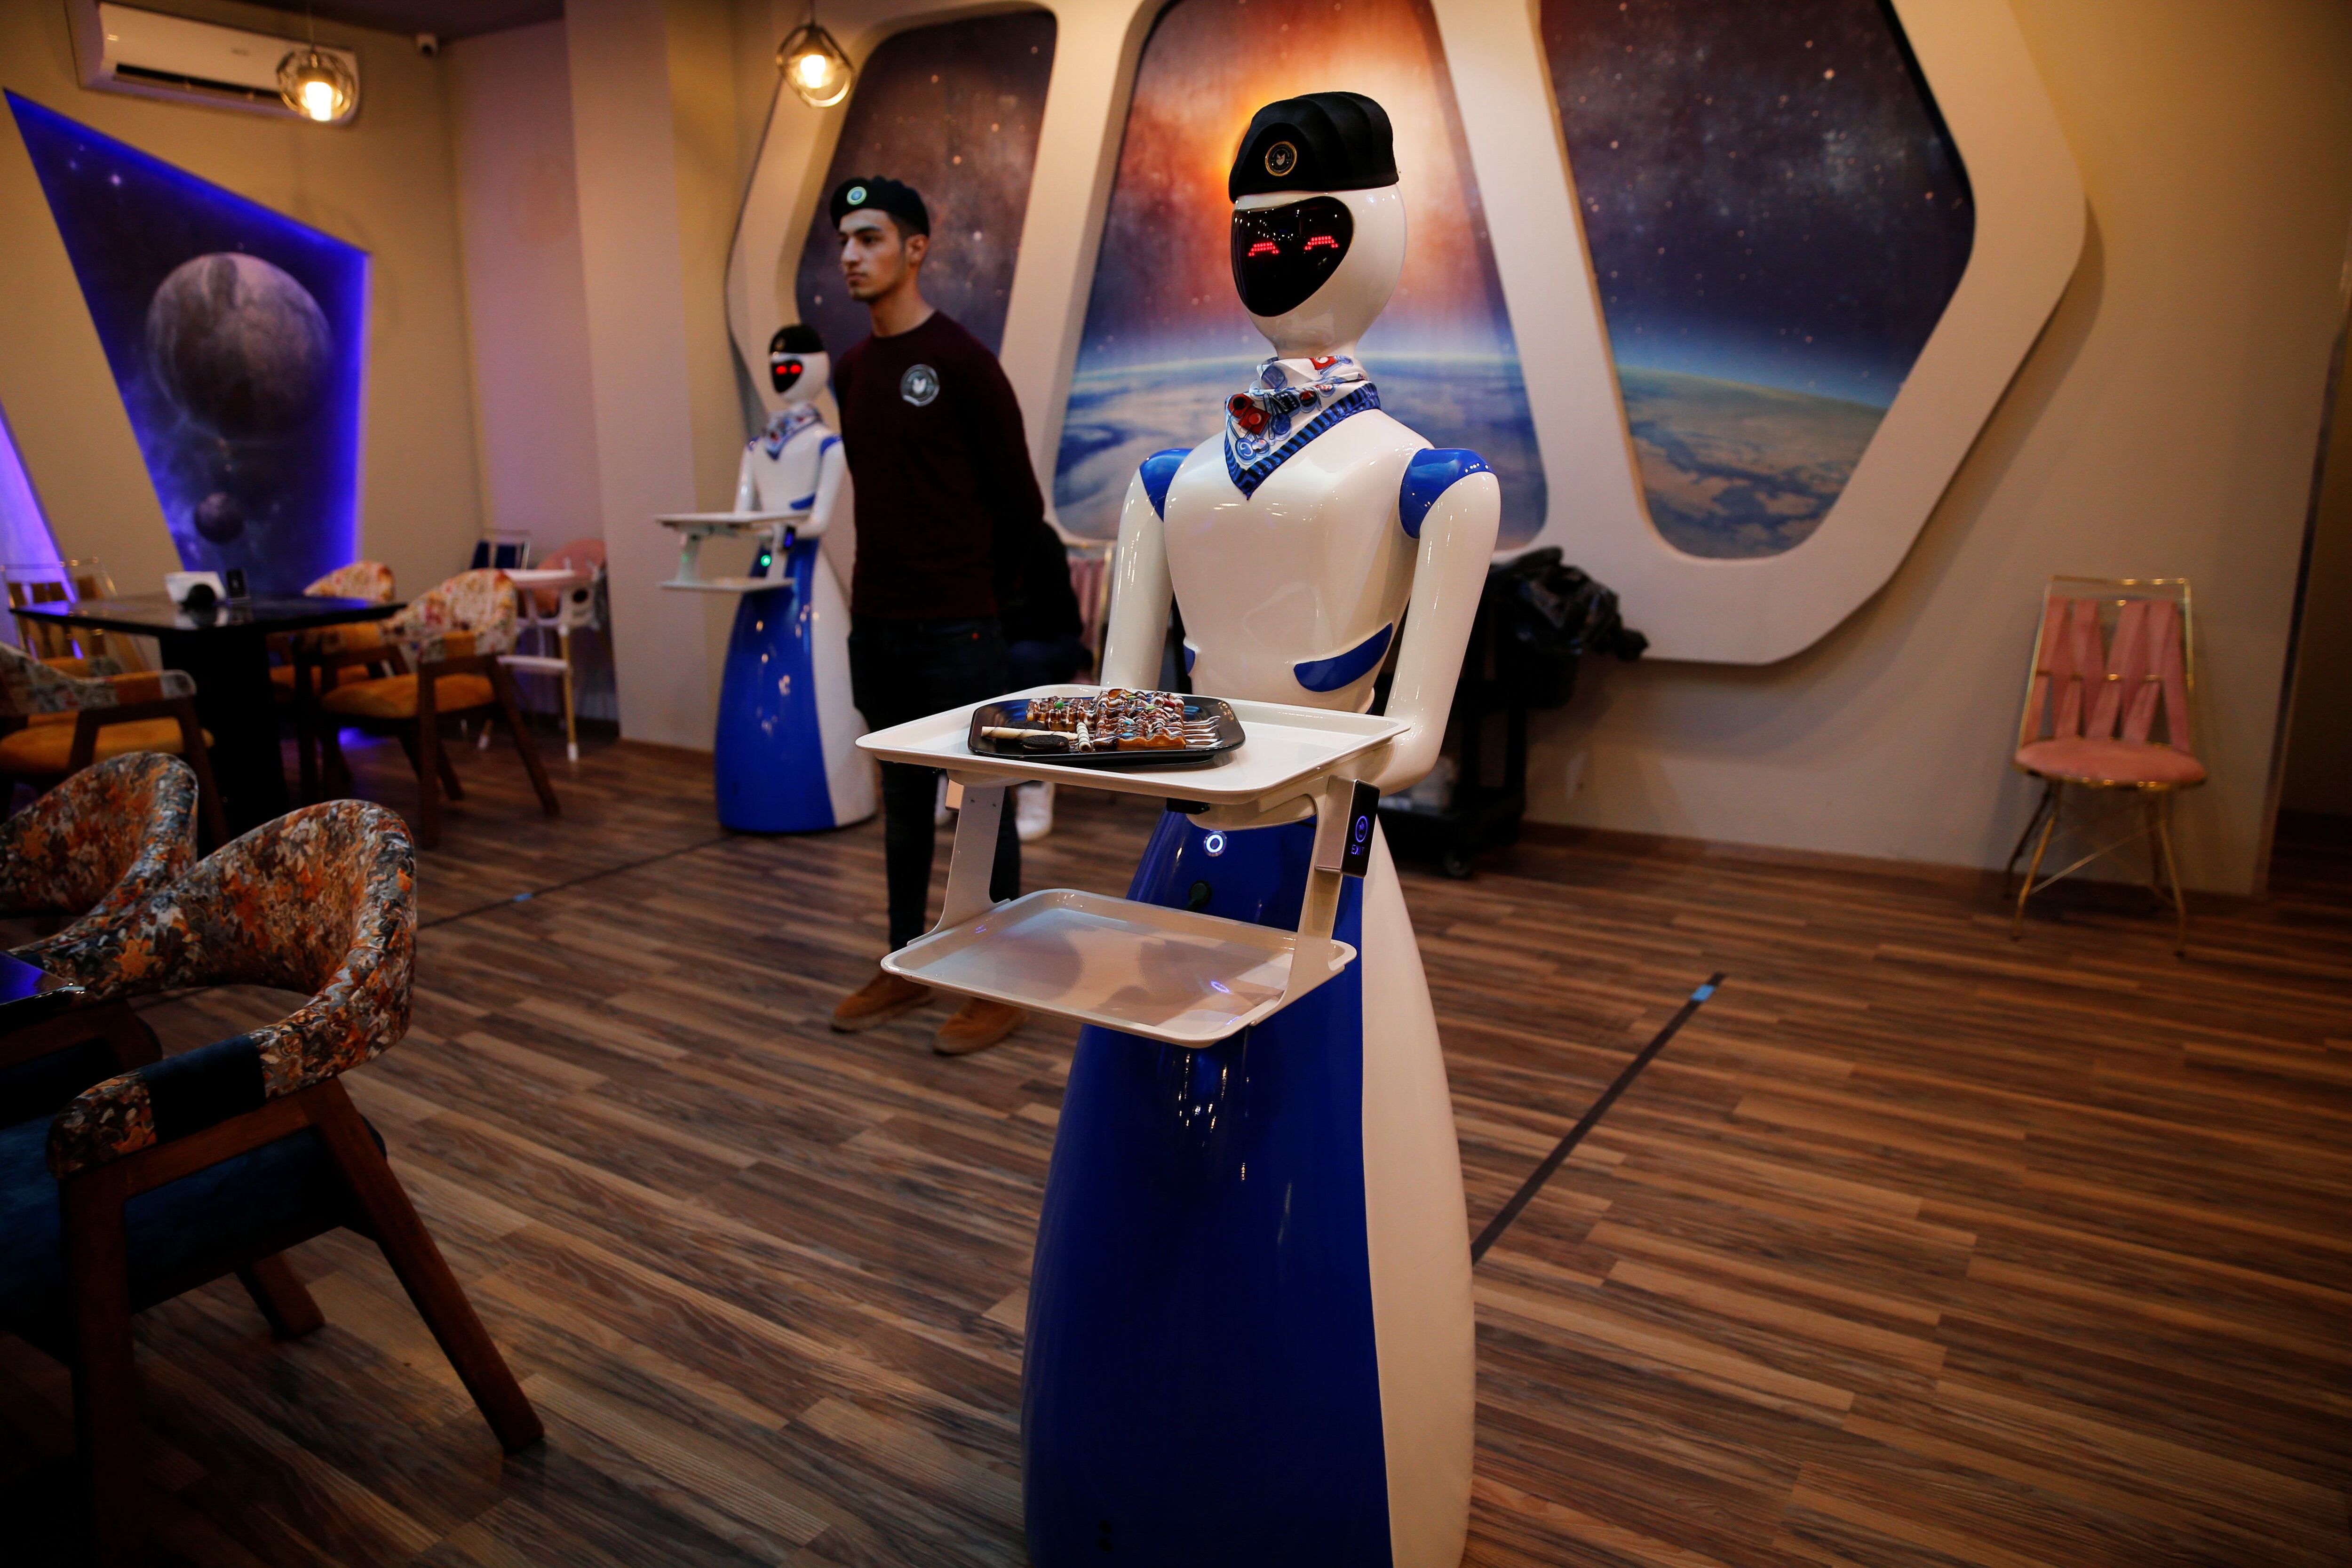 Los robots y las soluciones tecnológicas pueden trabajar continuamente sin necesidad de descanso. (REUTERS/Khalid al-Mousily)